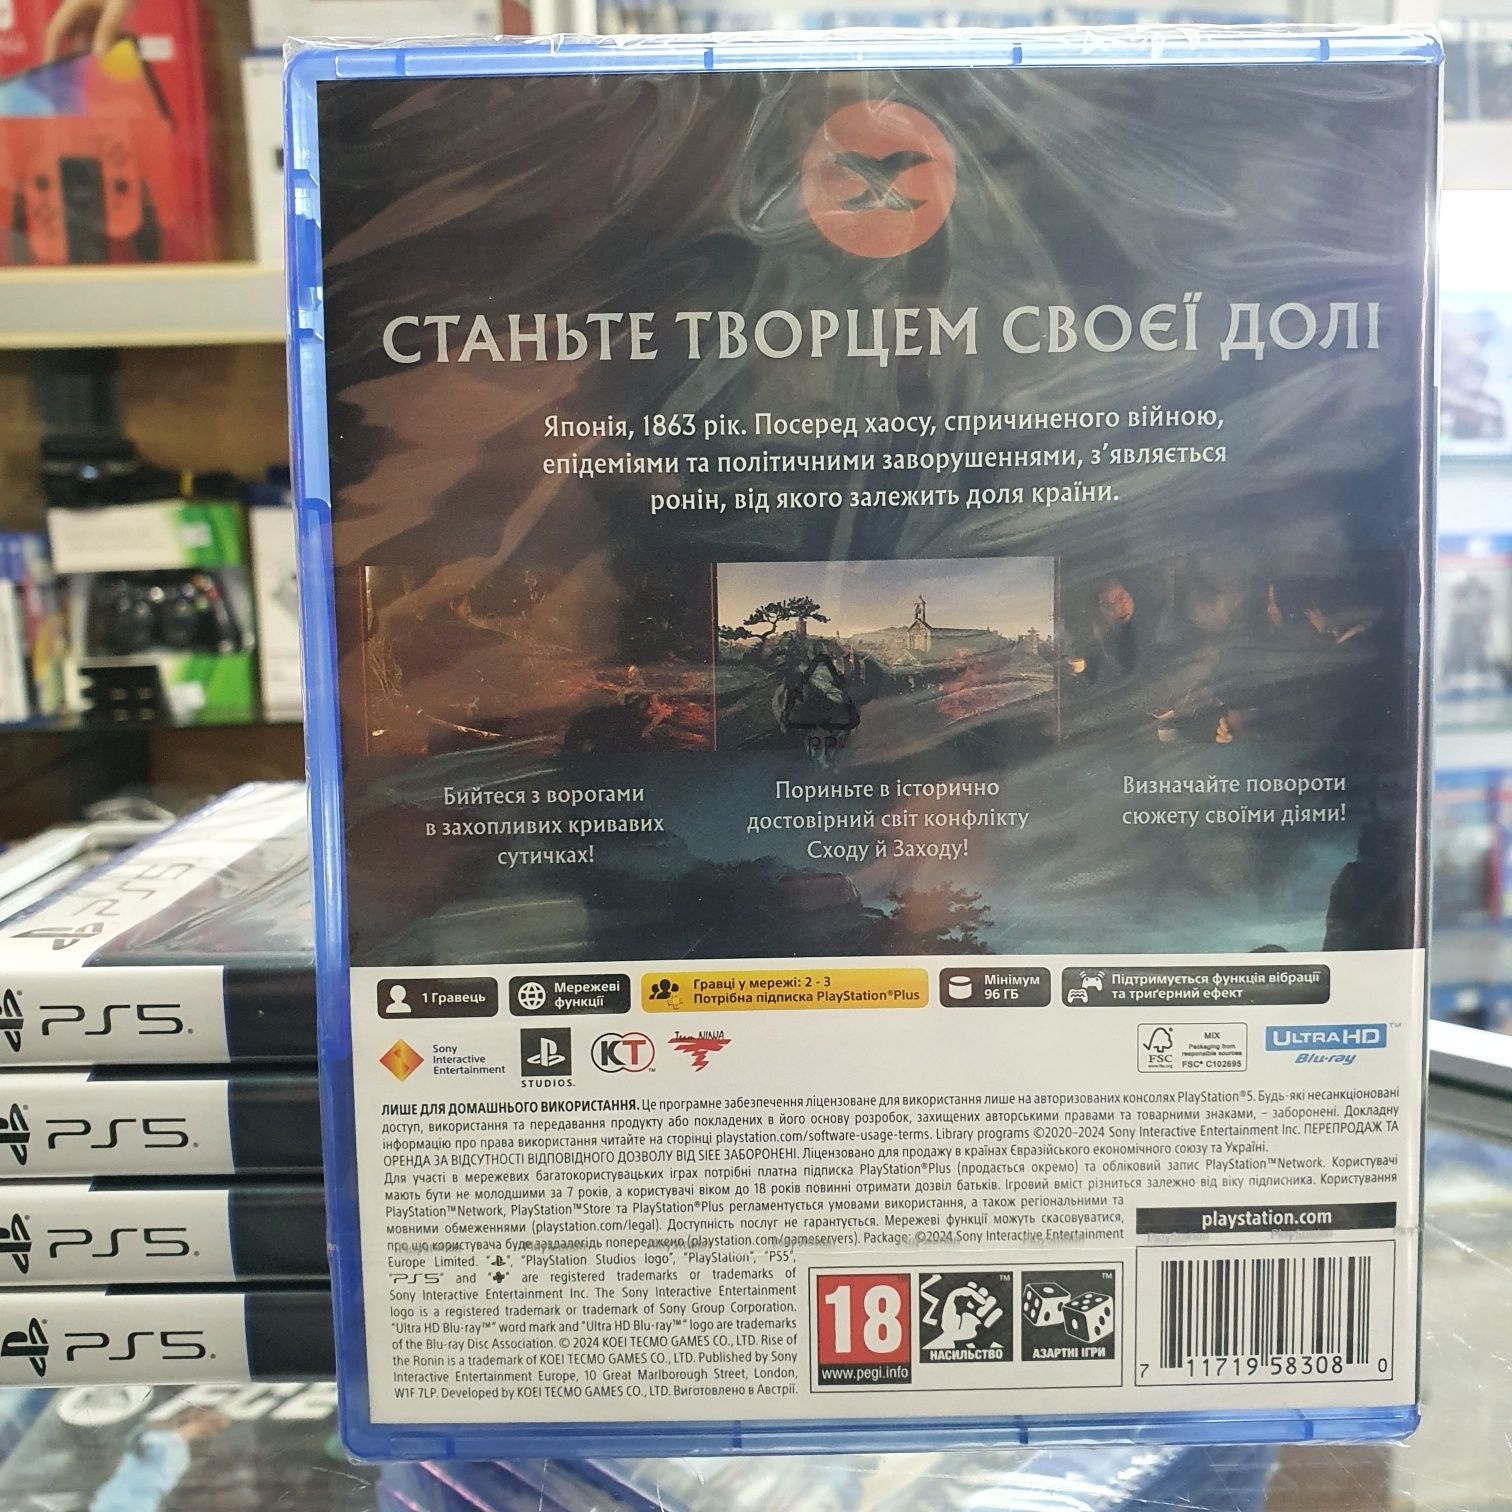 Гра Rise of the Ronin для Sony PS5 новий диск (магазин)